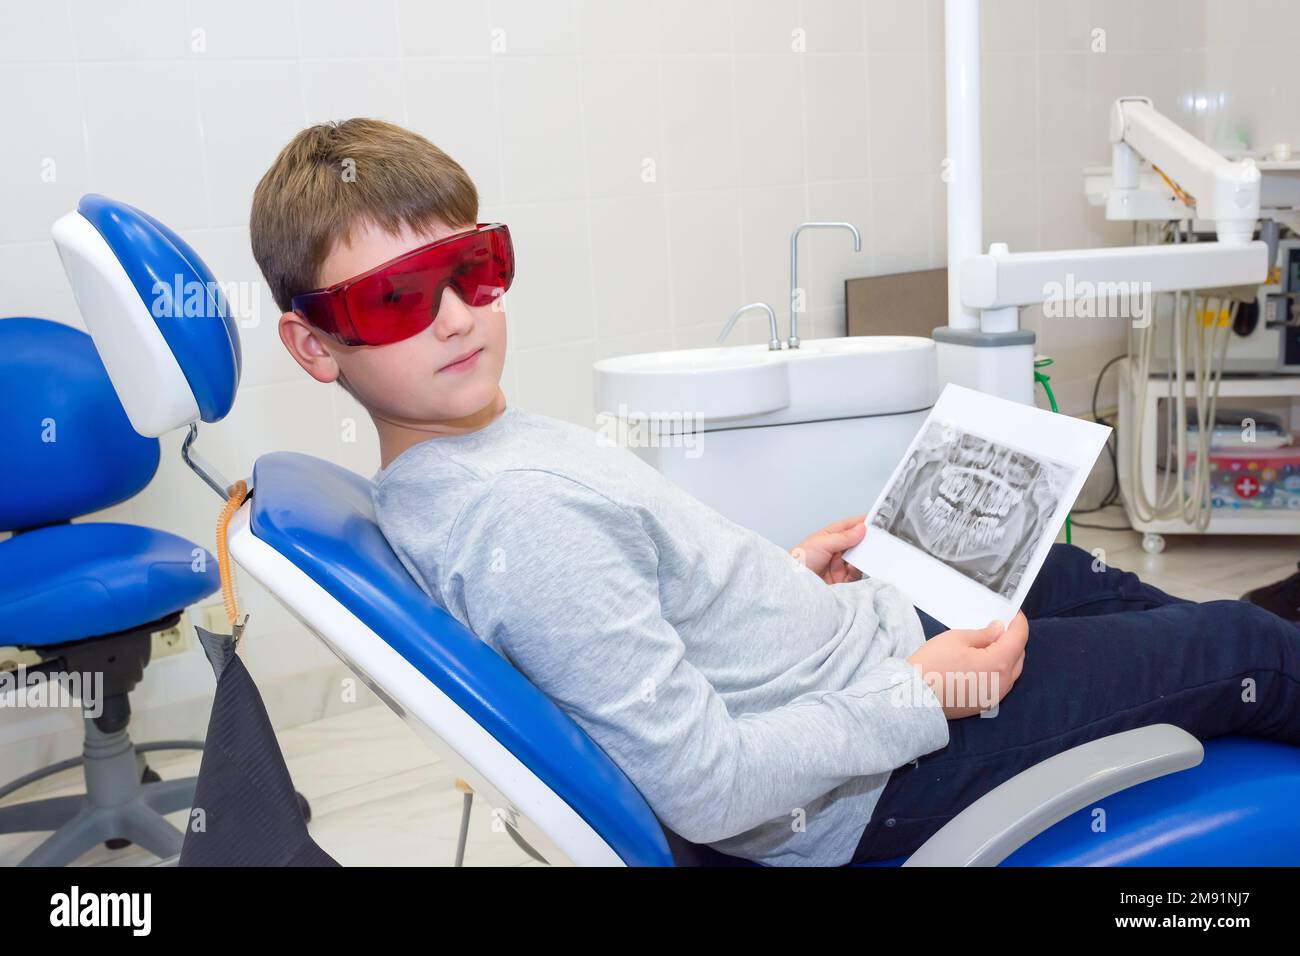 Un garçon heureux dans des lunettes de sécurité avec des rayons X dentaires (radiographies) dans ses mains assis dans un cabinet de dentiste Banque D'Images